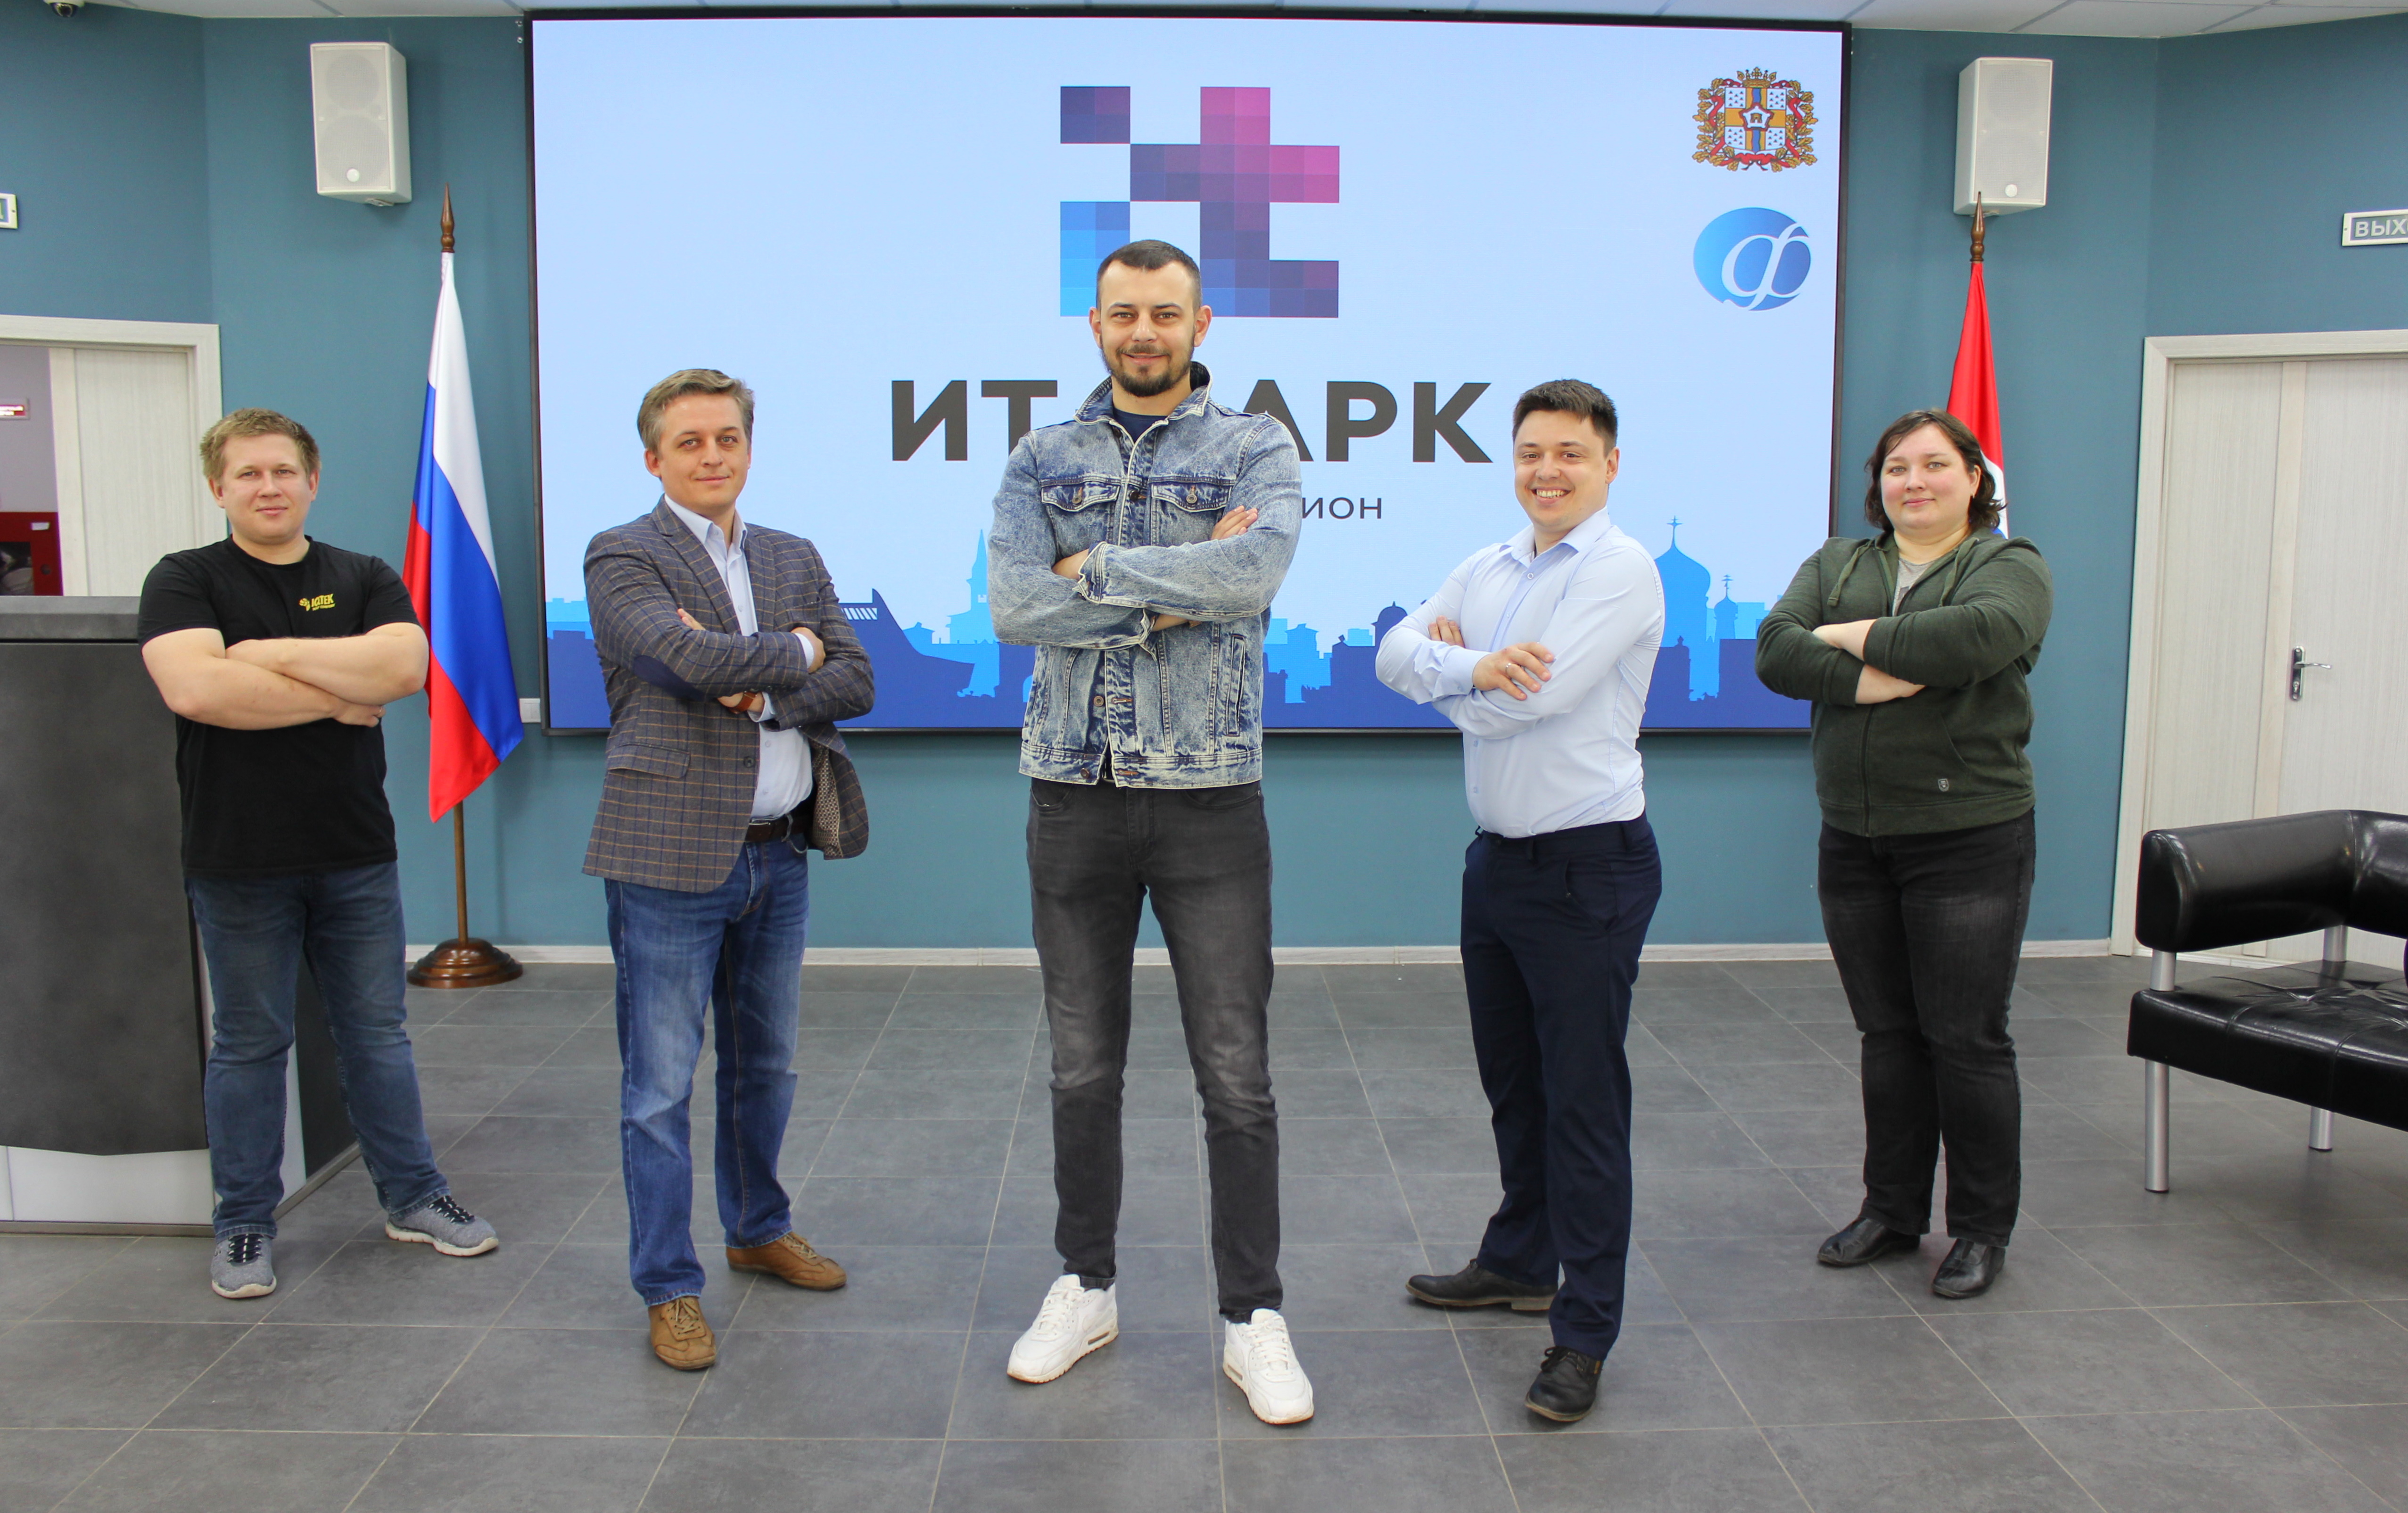 Резидентами Омского регионального ИТ-парка стали шесть компаний, работающих в IT-сфере